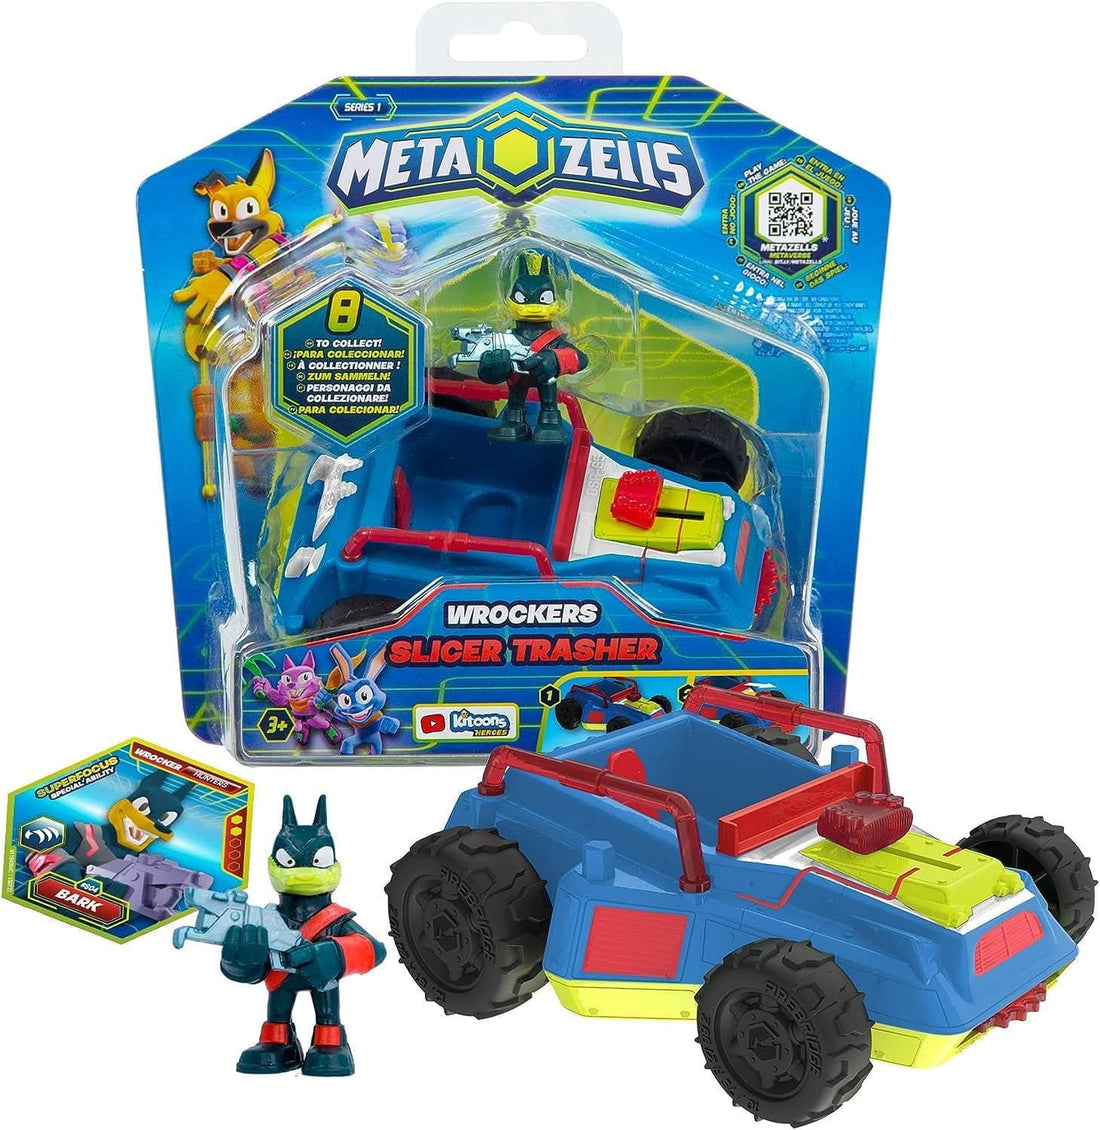 Metazells Vehicle Pack 7